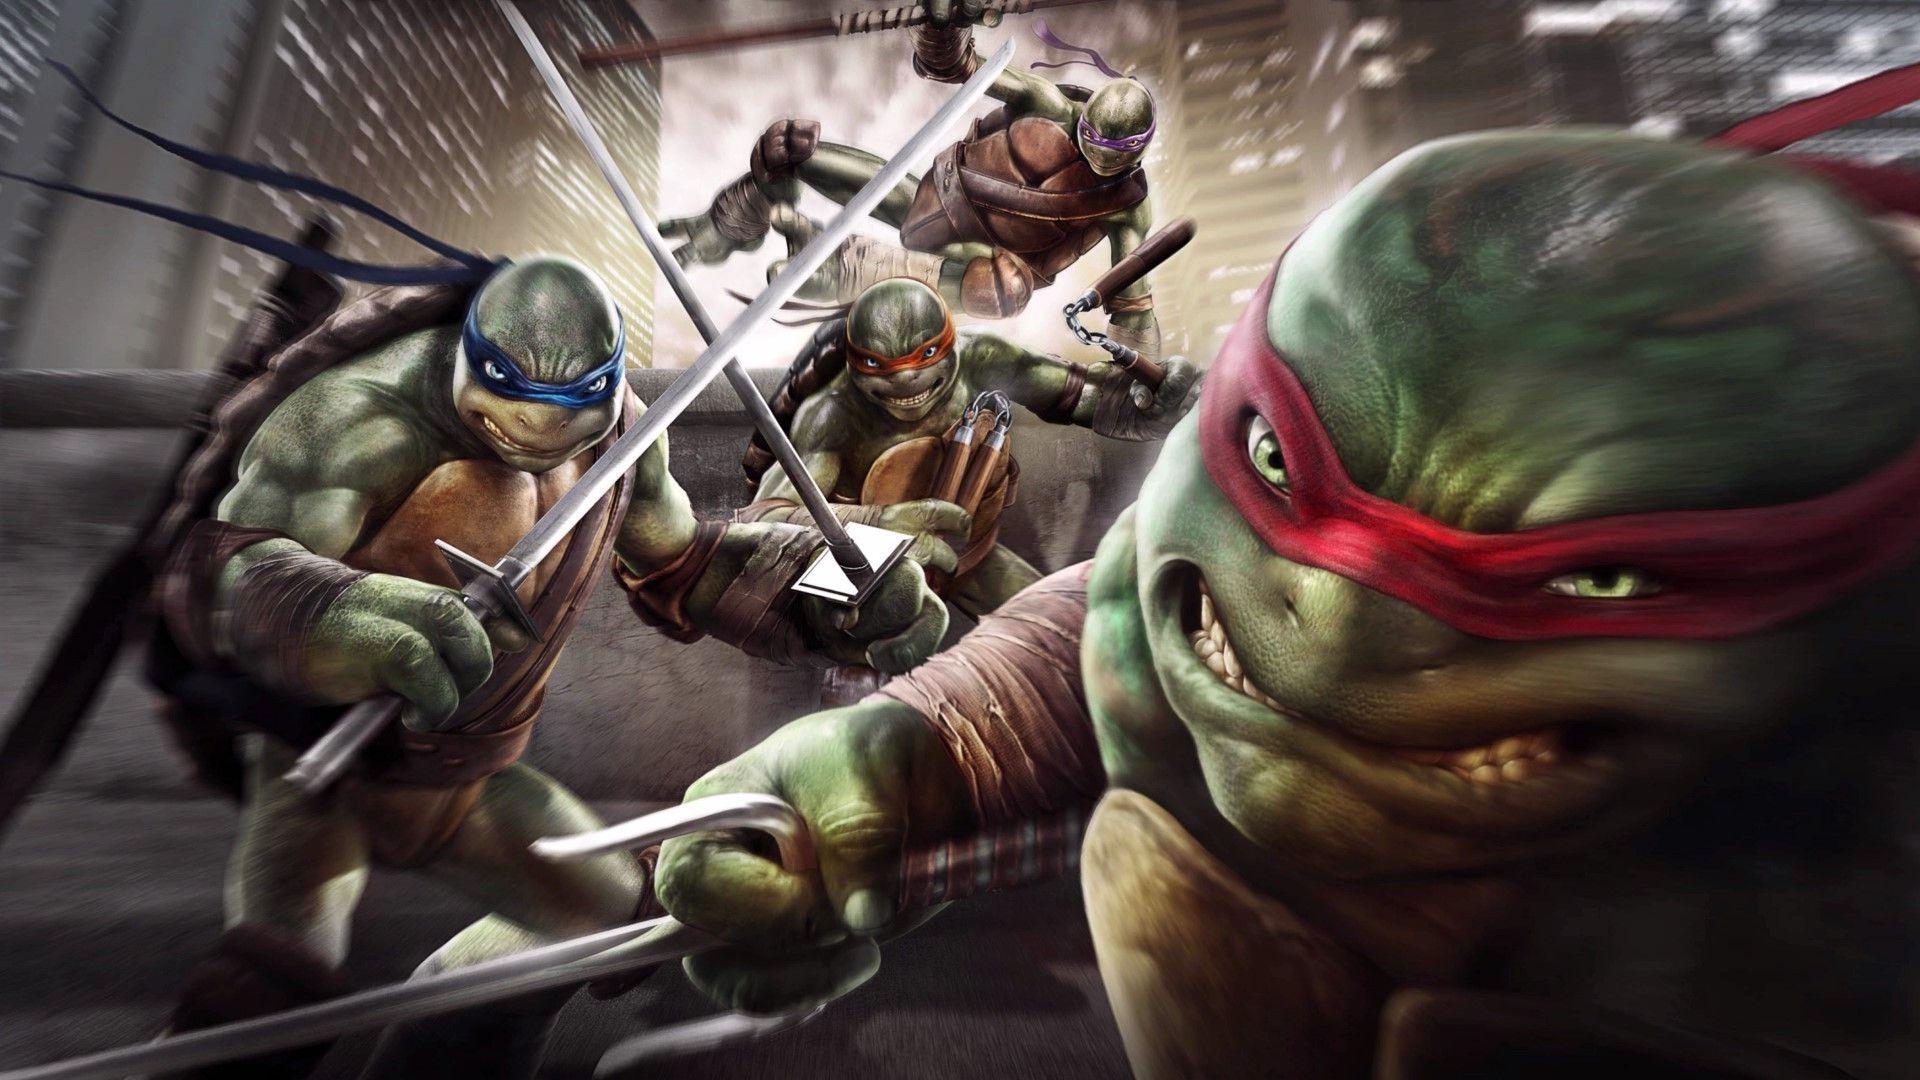 Nếu bạn là fan của bộ truyện Ninja Turtles, hãy xem ngay hình ảnh liên quan đến từ khóa Ninja Turtles Wallpaper. Bạn sẽ tìm thấy những bức ảnh tuyệt đẹp về nhóm siêu anh hùng này, đủ sức để làm mới trang trí cho màn hình điện thoại của bạn.